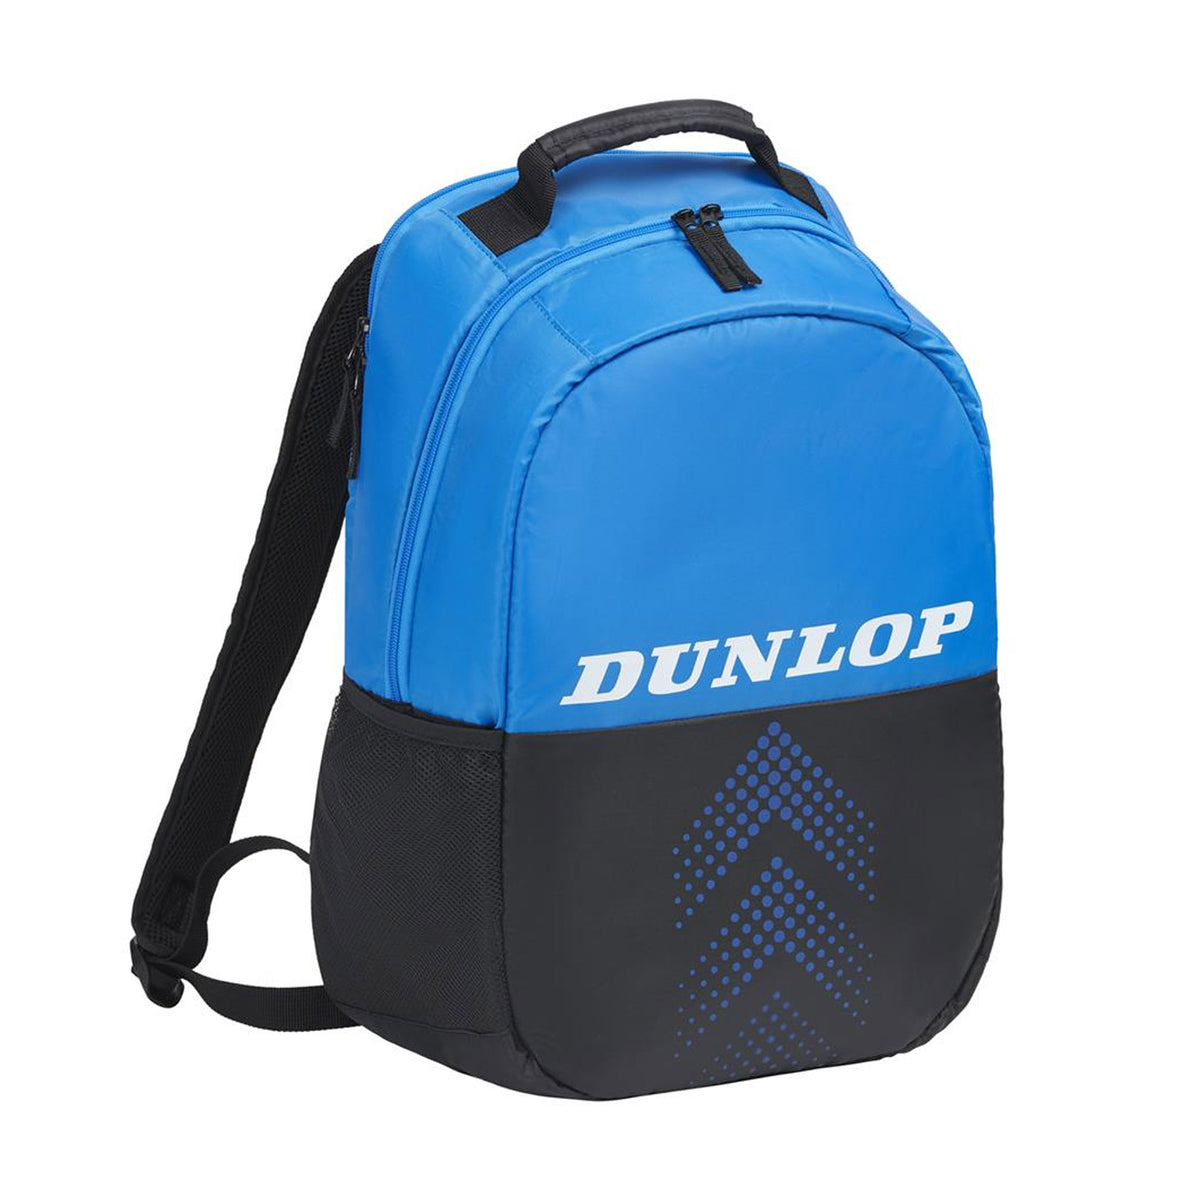 Dunlop FX Club Backpack: Black/Blue